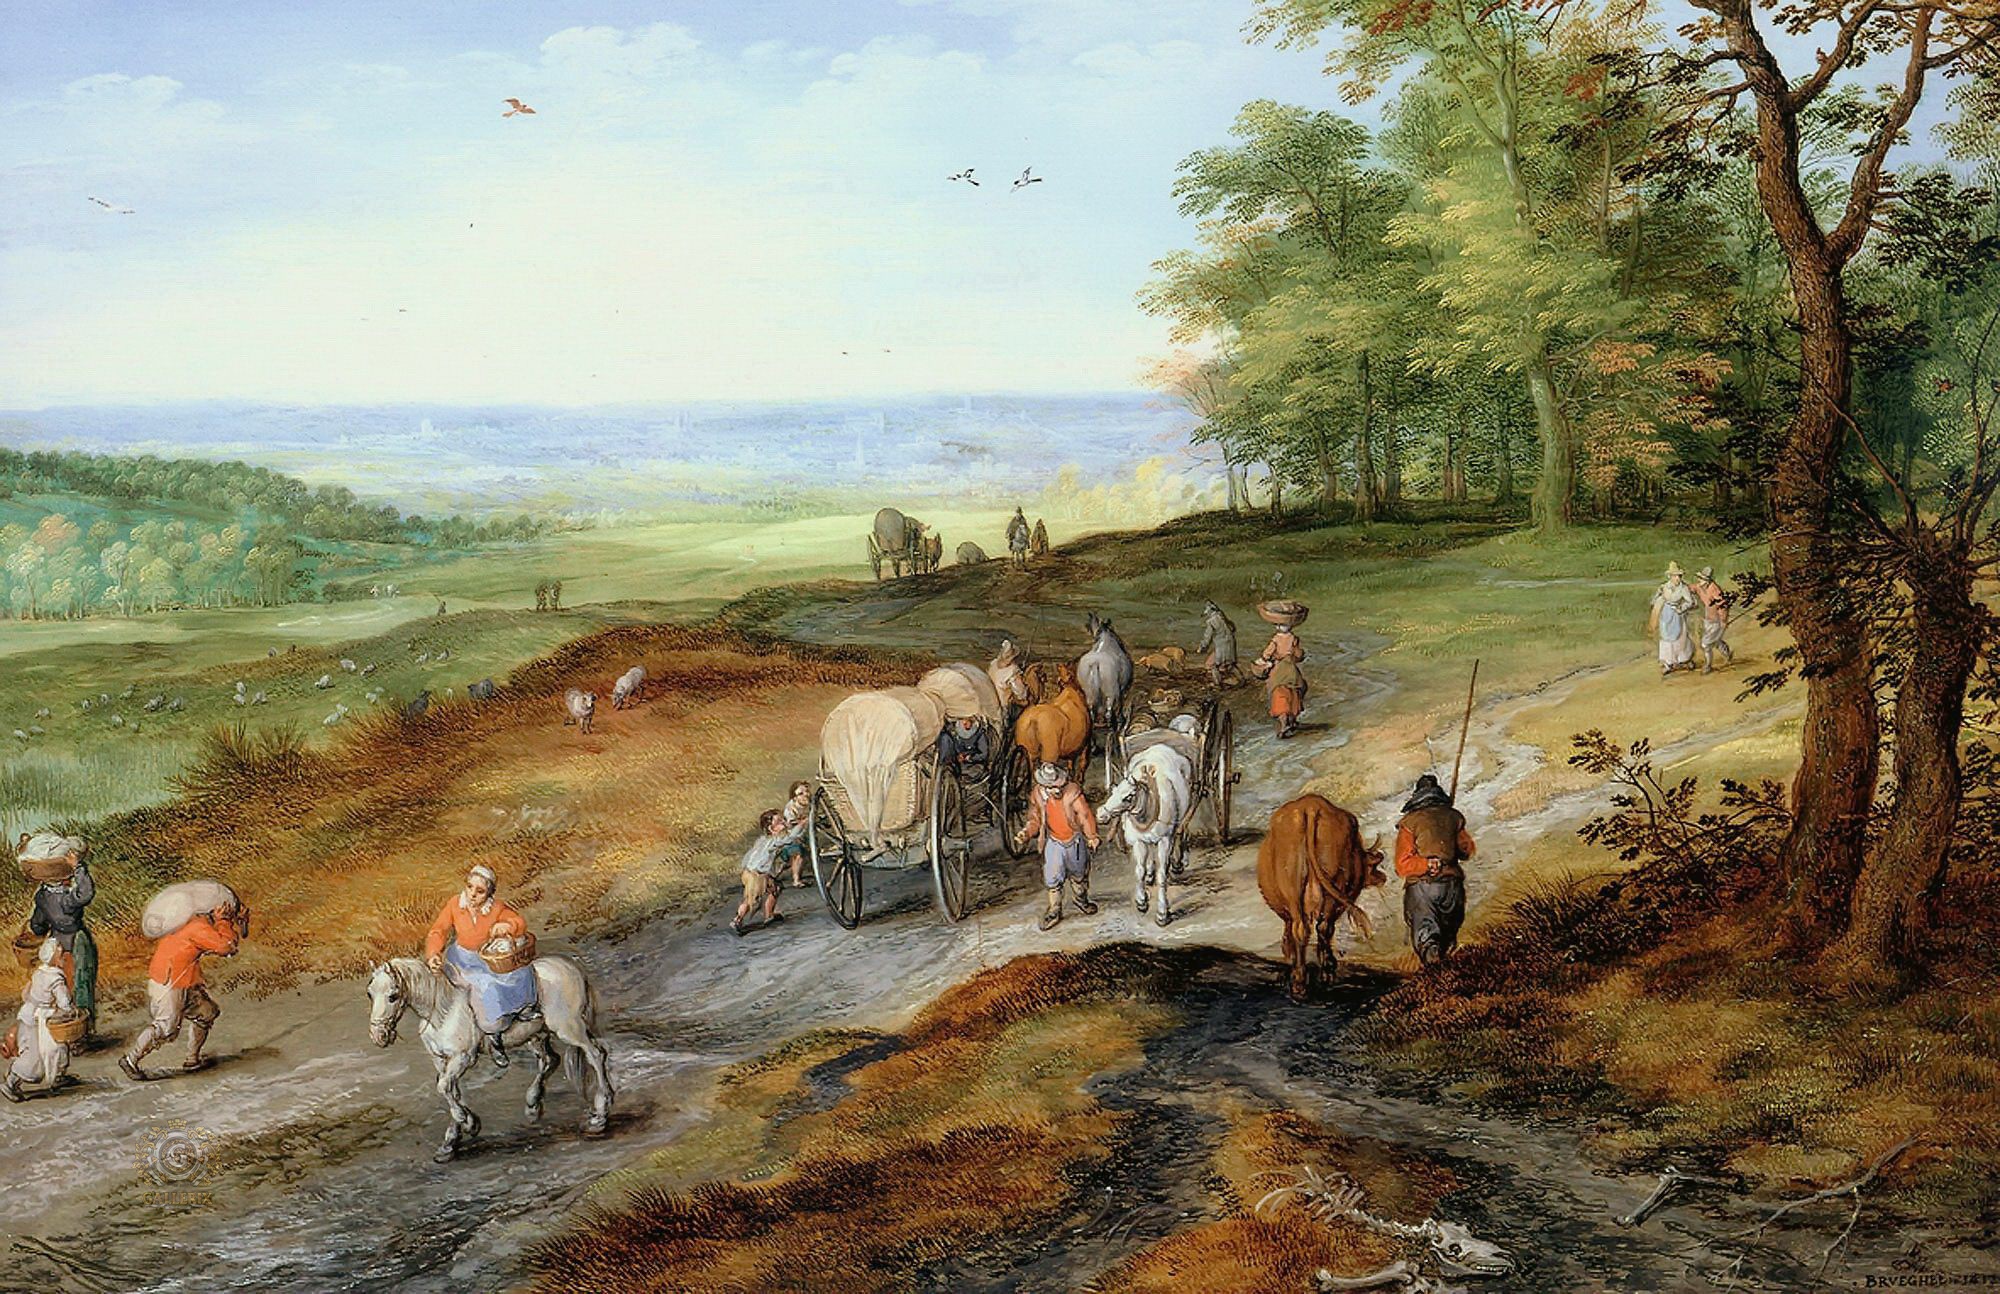 Ян Брейгель Старший. "Возвращение с рынка". 1612. Частная коллекция.